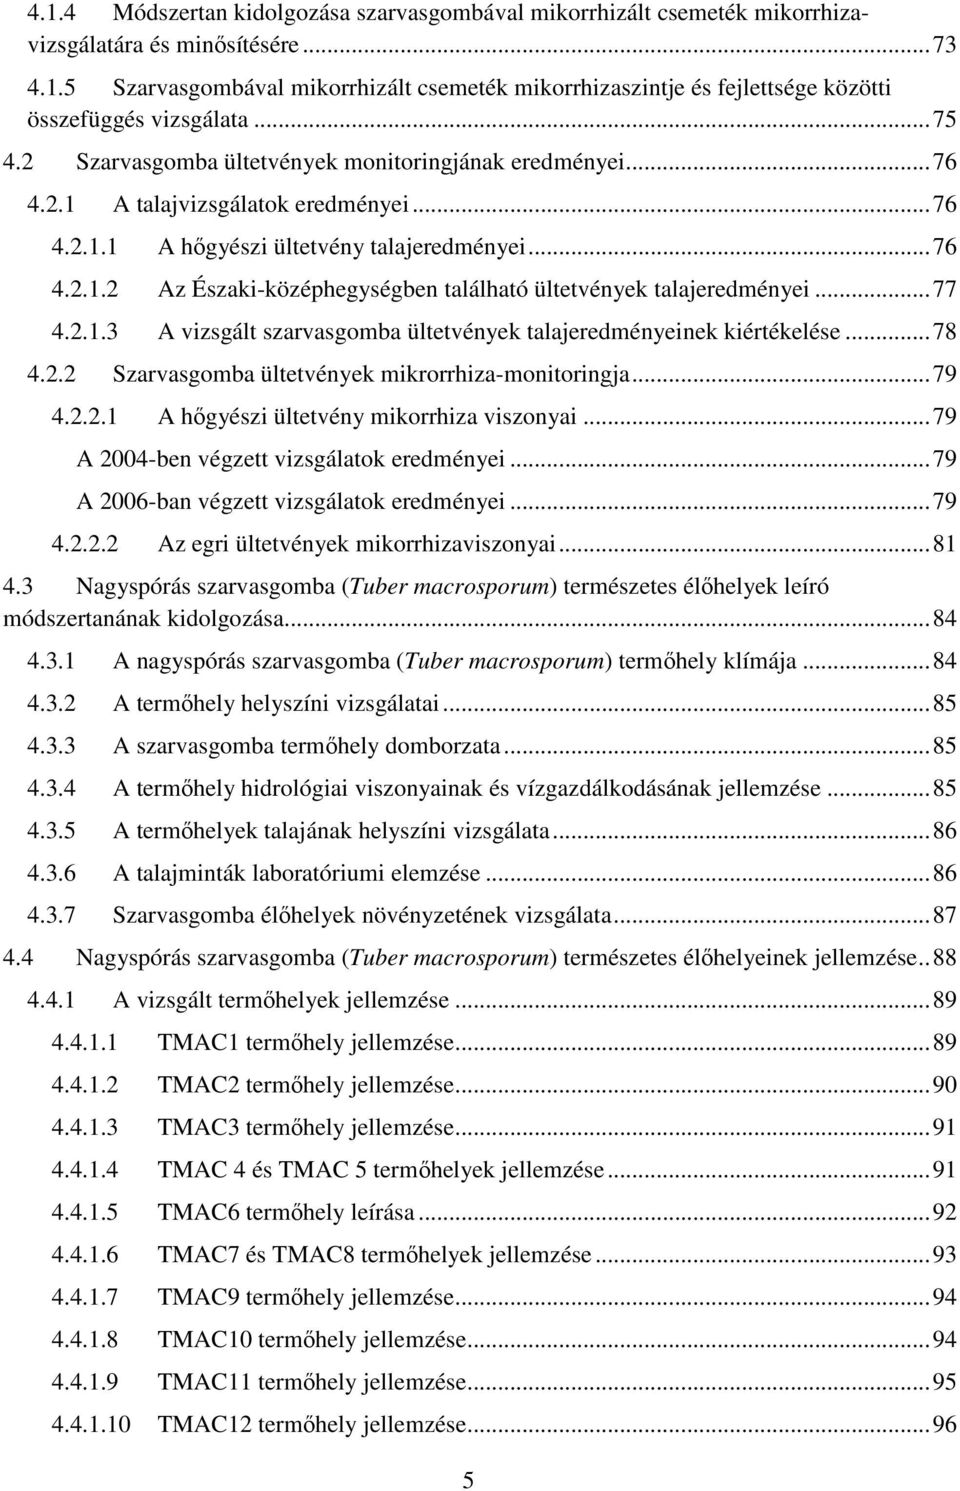 .. 77 4.2.1.3 A vizsgált szarvasgomba ültetvények talajeredményeinek kiértékelése... 78 4.2.2 Szarvasgomba ültetvények mikrorrhiza-monitoringja... 79 4.2.2.1 A hőgyészi ültetvény mikorrhiza viszonyai.